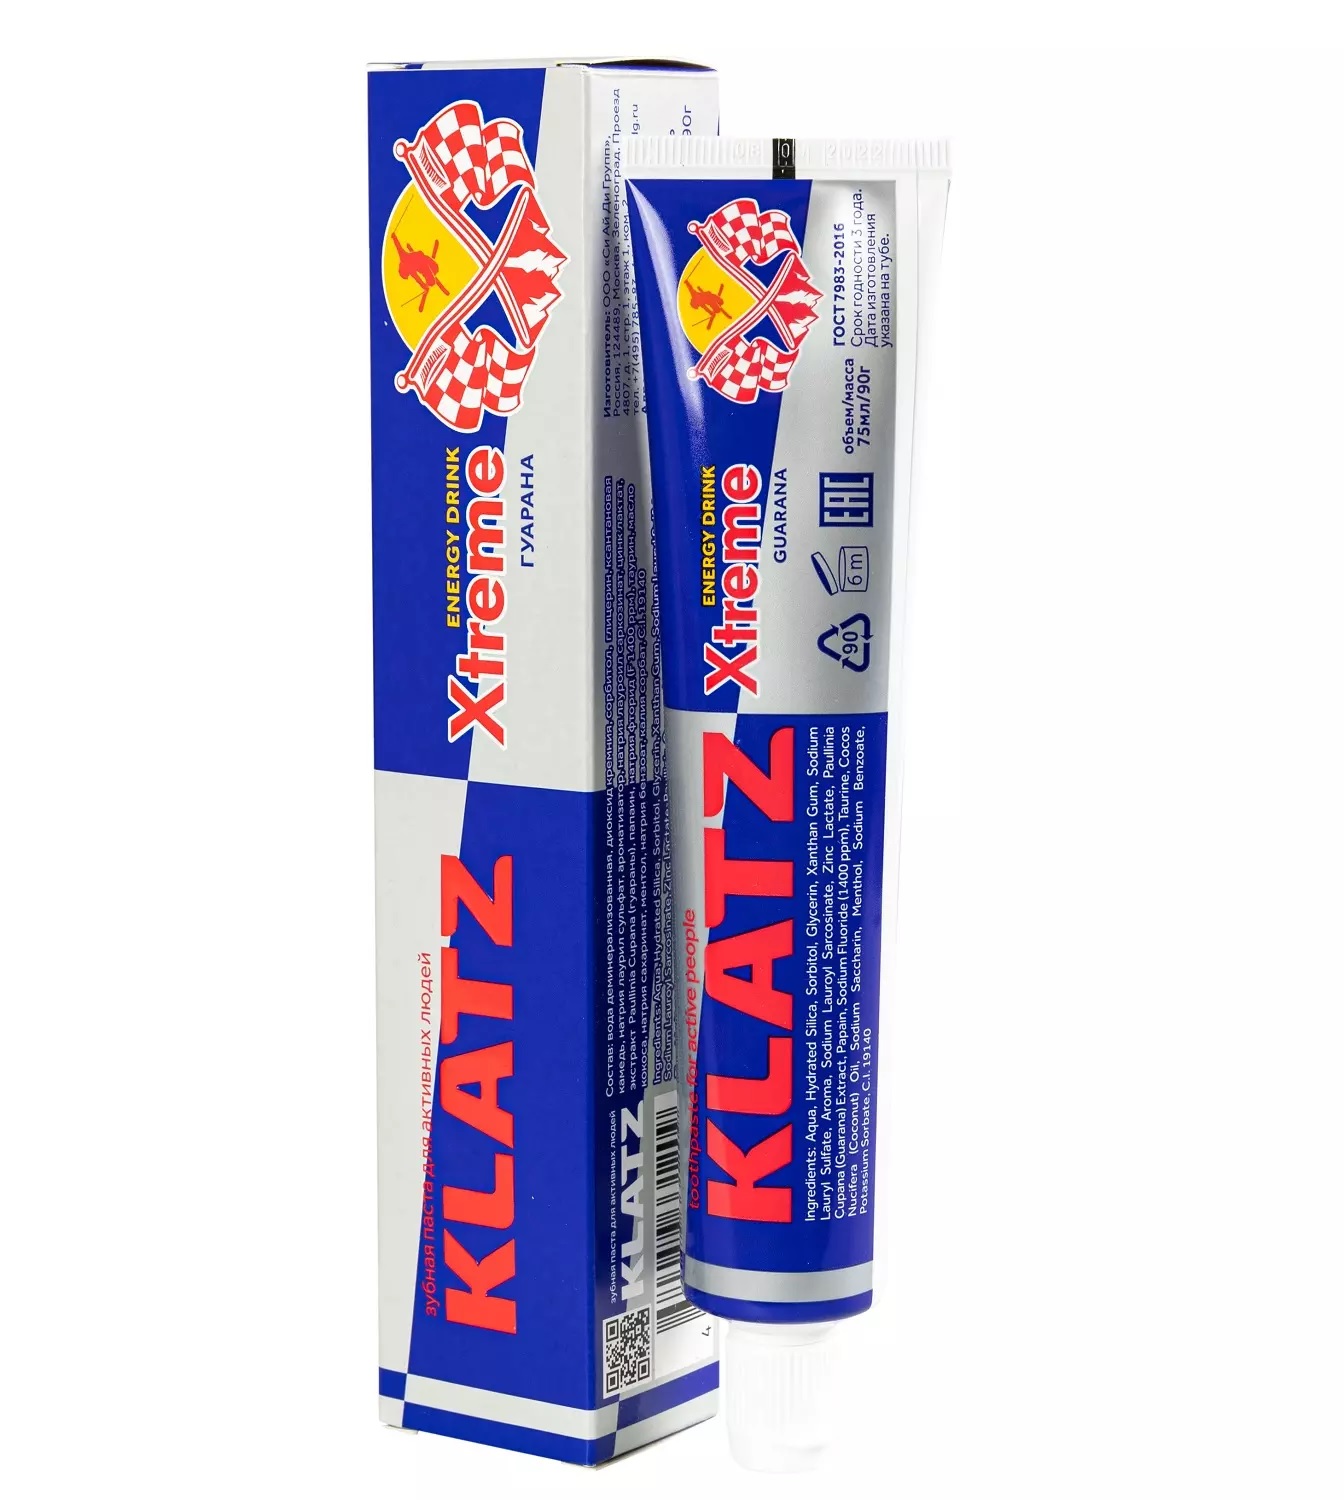 Паста зубная Klatz X-treme Energy Drink для активных людей, гуарана, 75 мл зубная паста klatz brutal only для мужчин терпкий коньяк 75мл